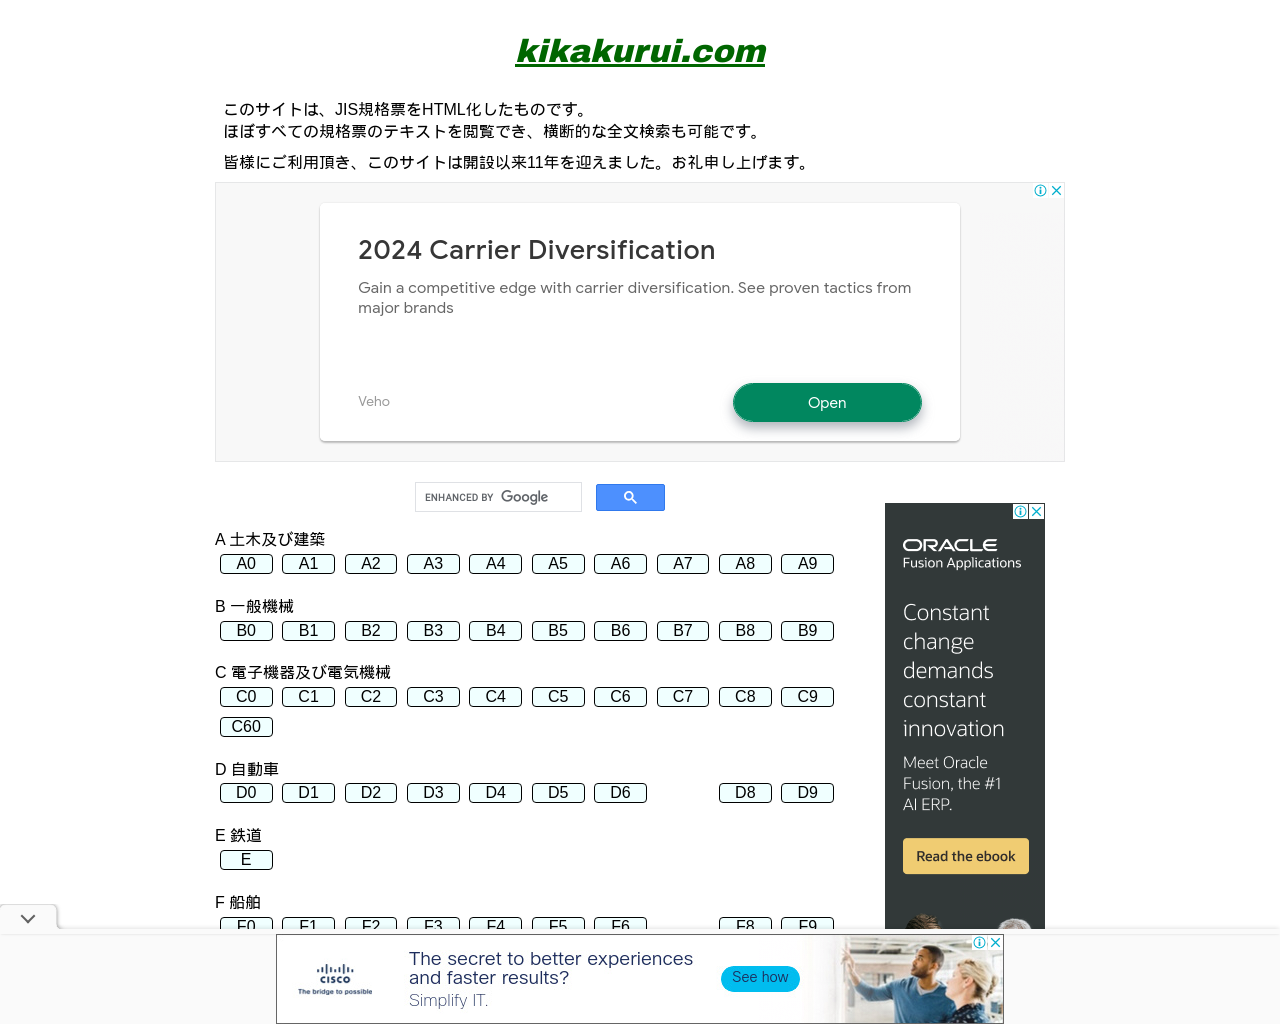 kikakurui.com